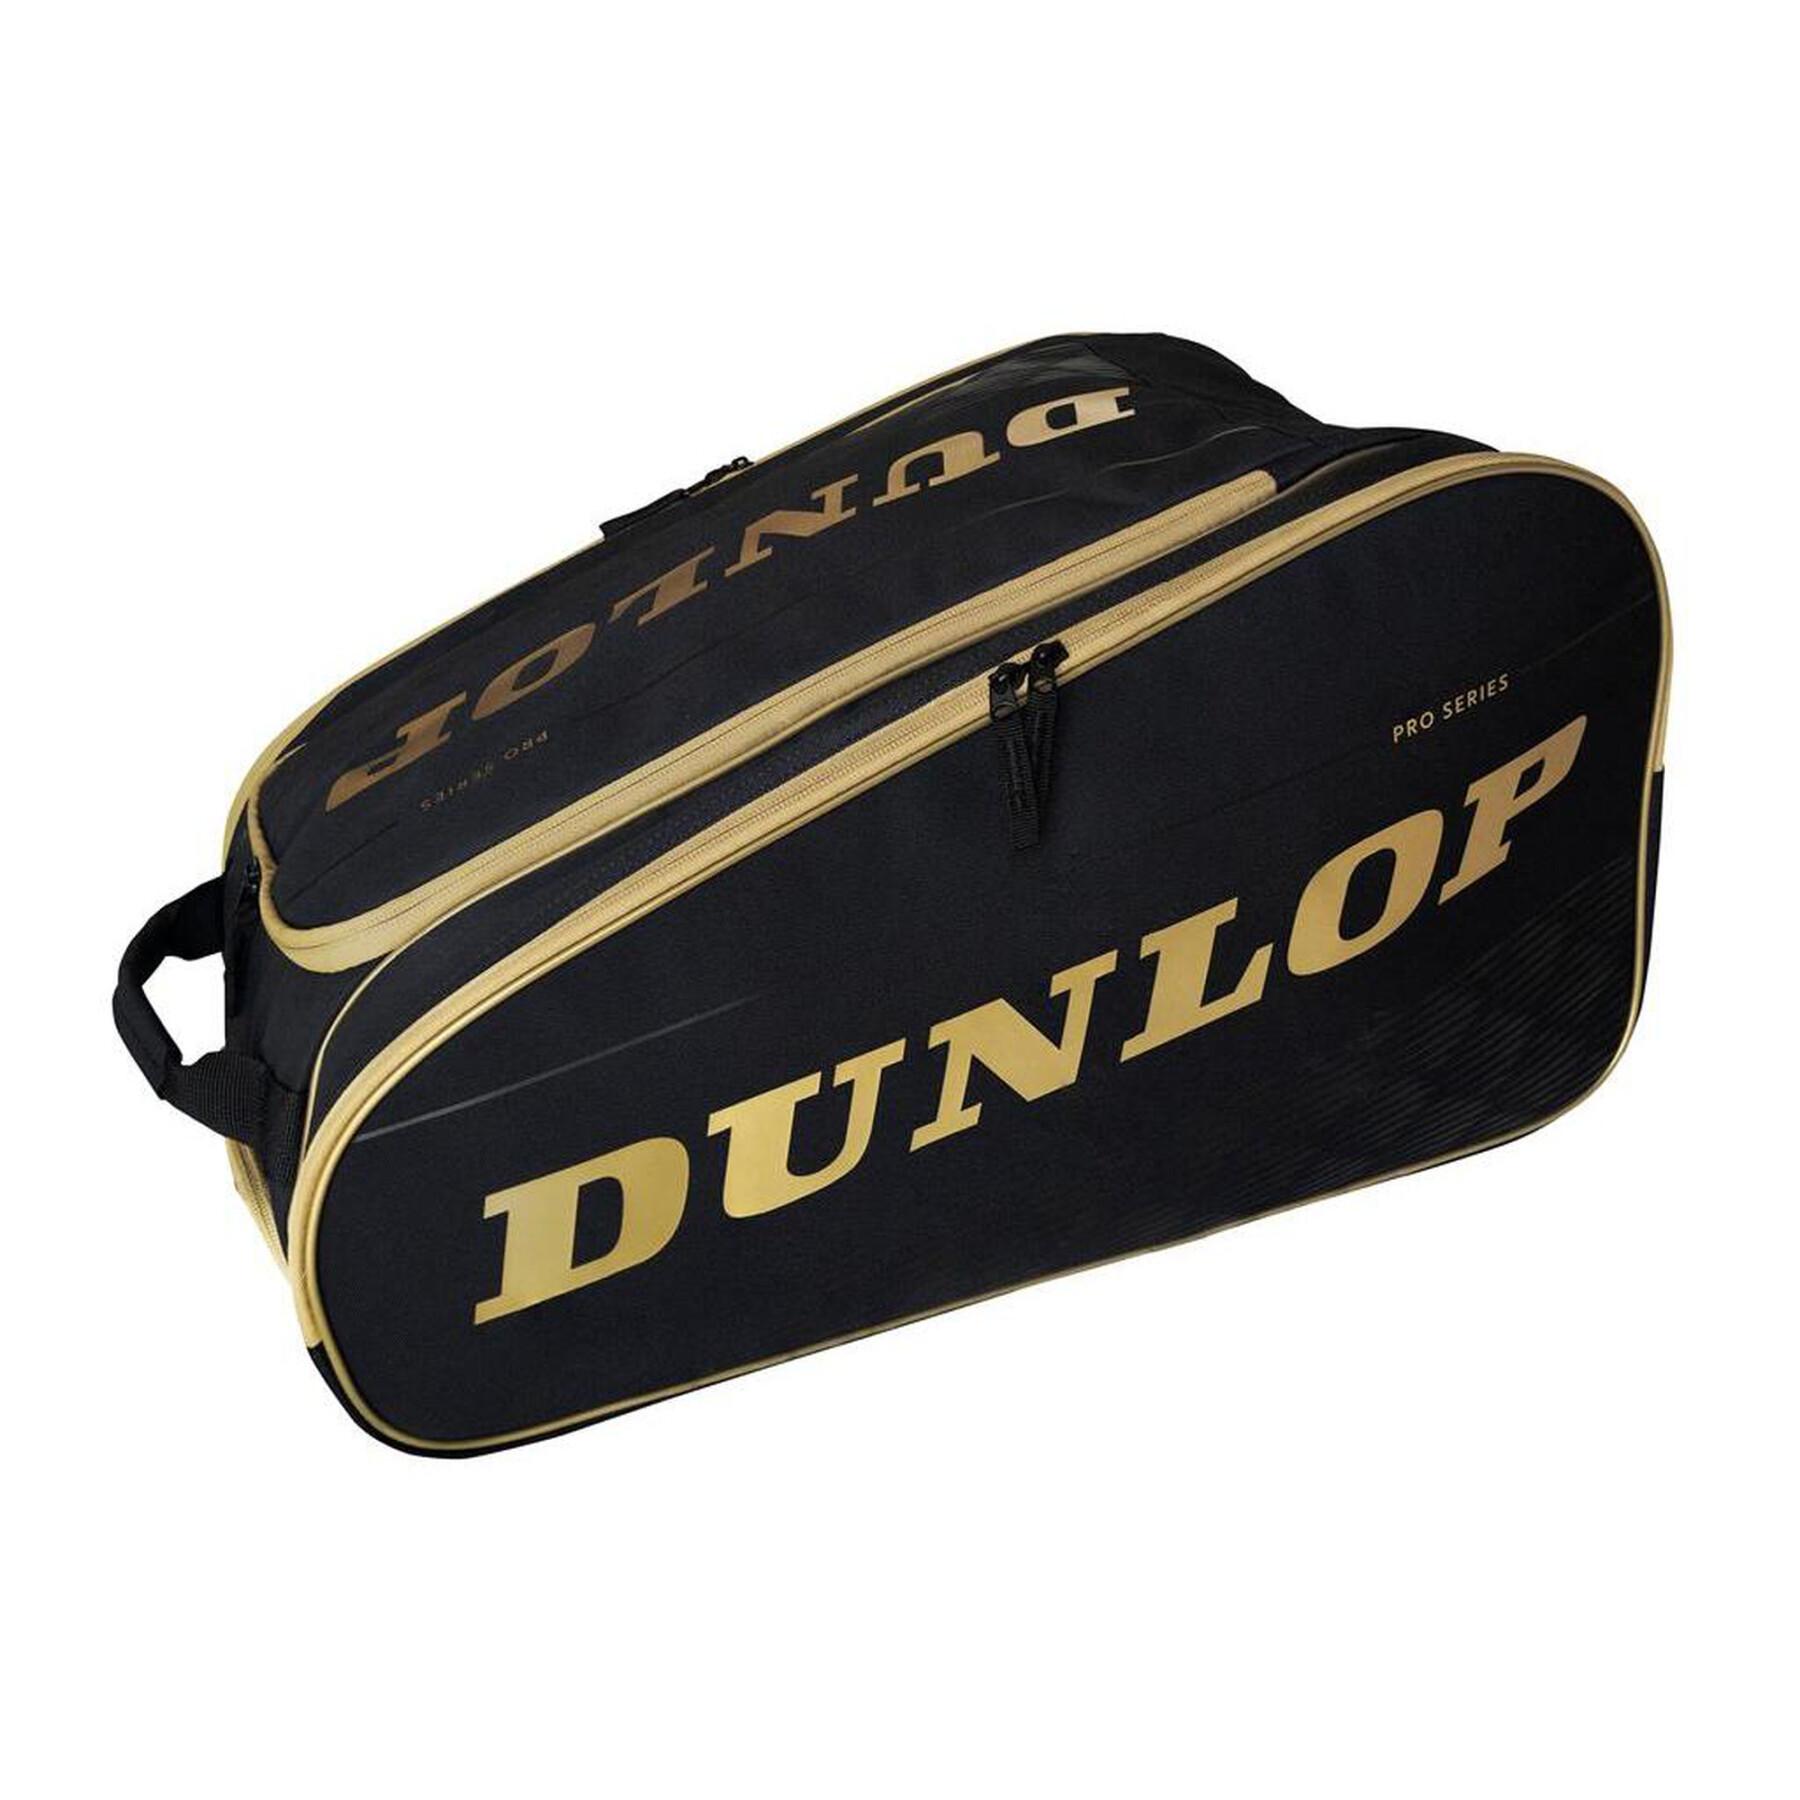 Racket bag from padel Dunlop Paletero Pro Series